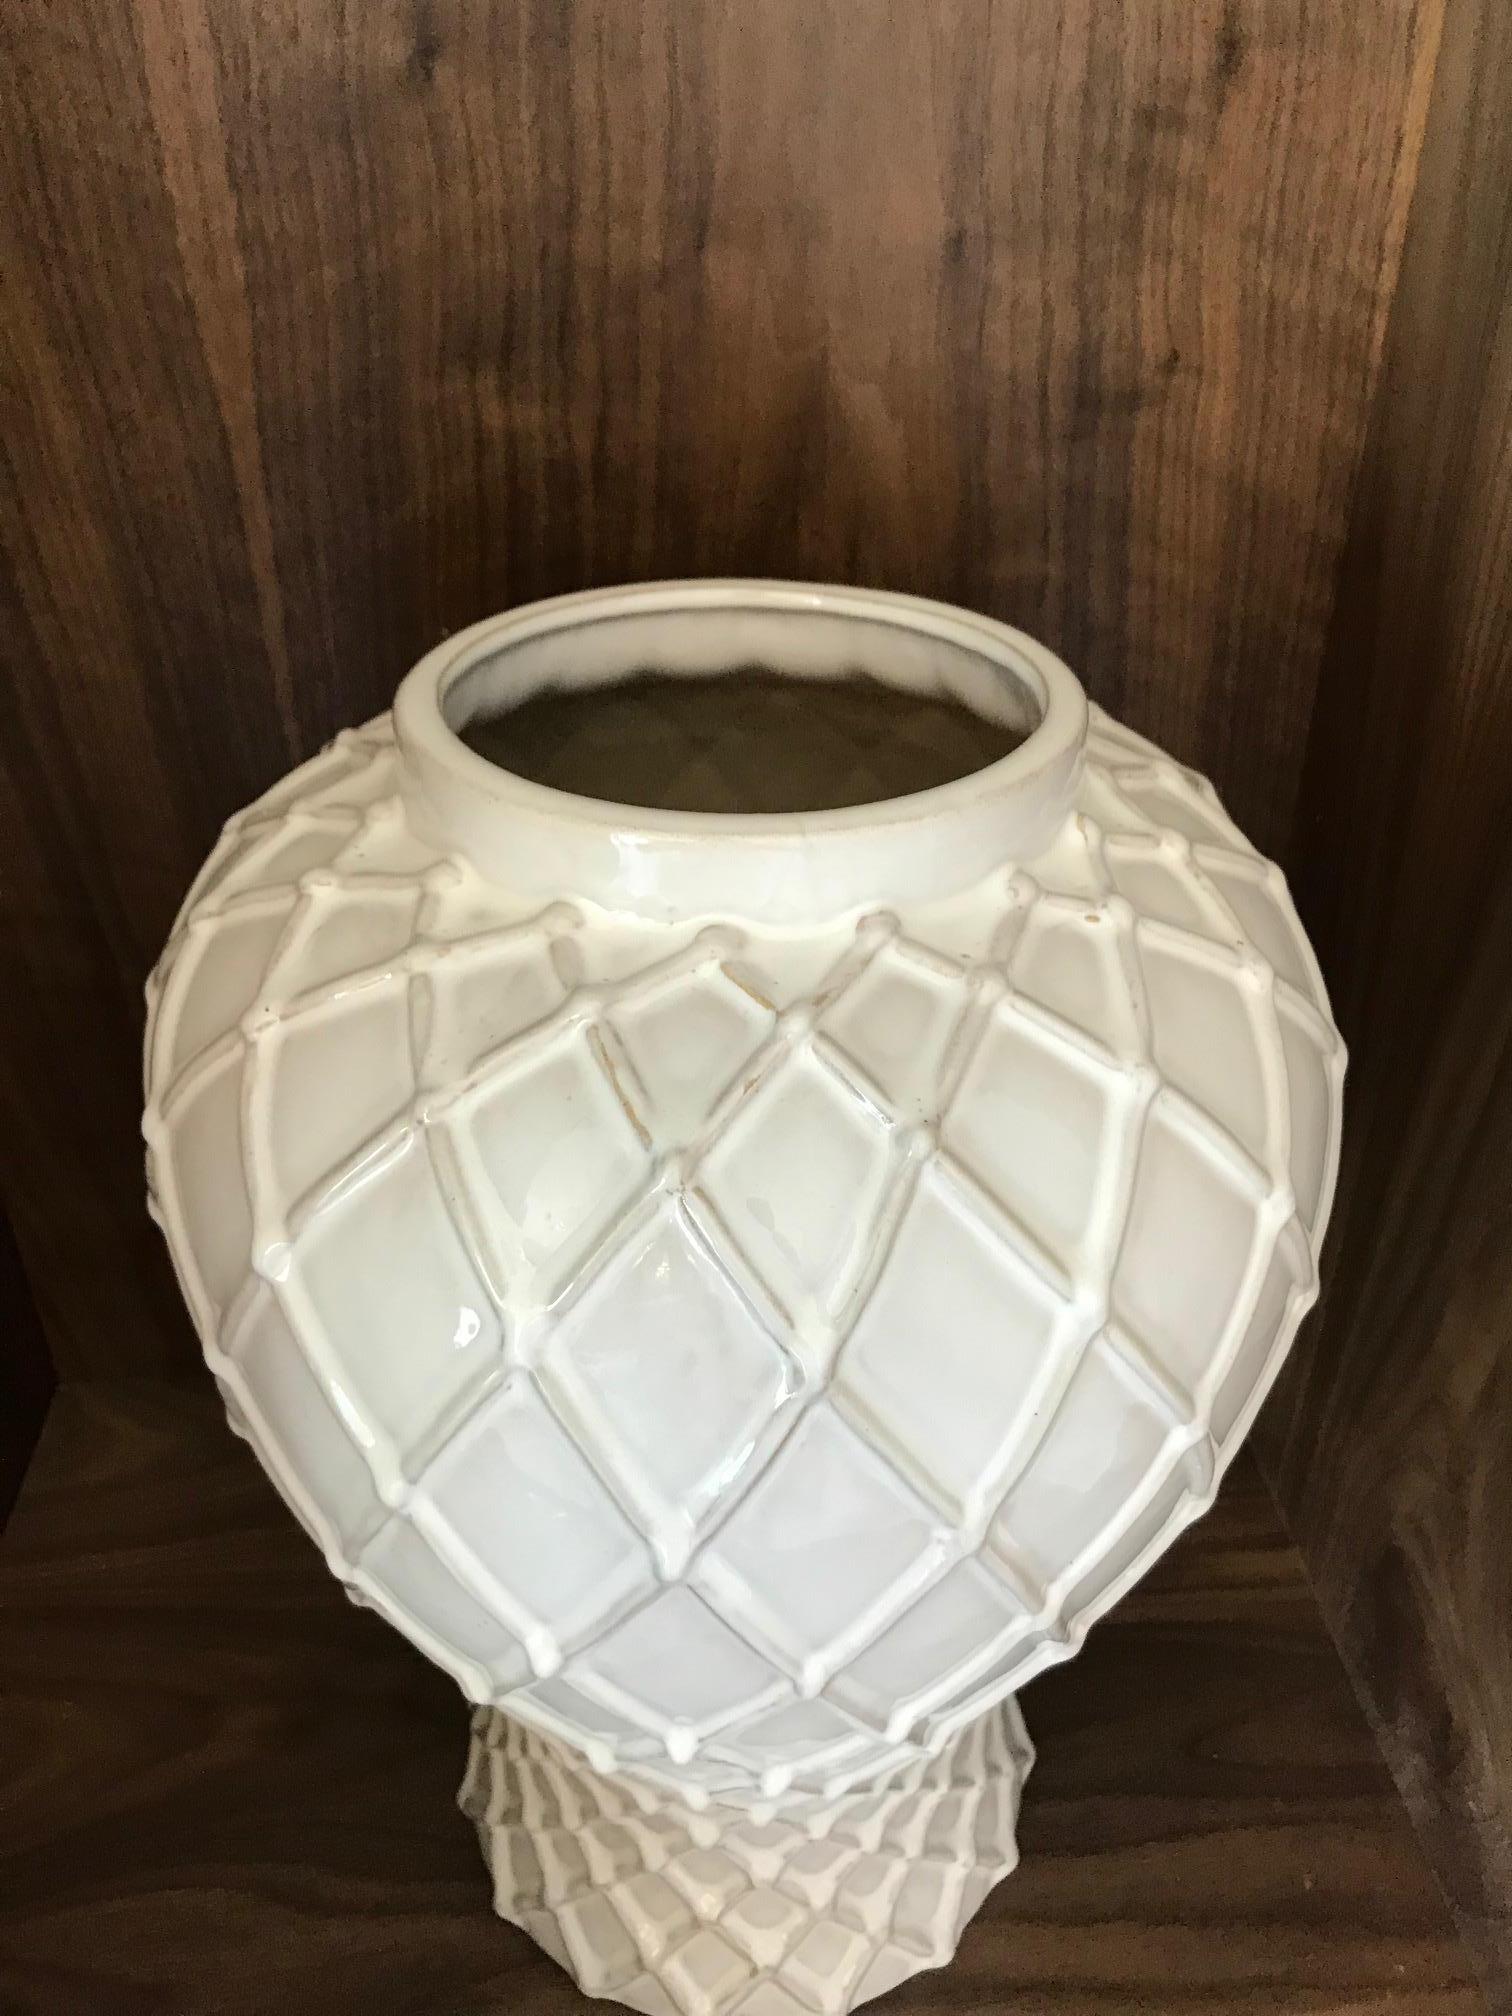 Contemporary Exquisite White Ceramic Lidded Urn Vase with Lattice Design, Italy